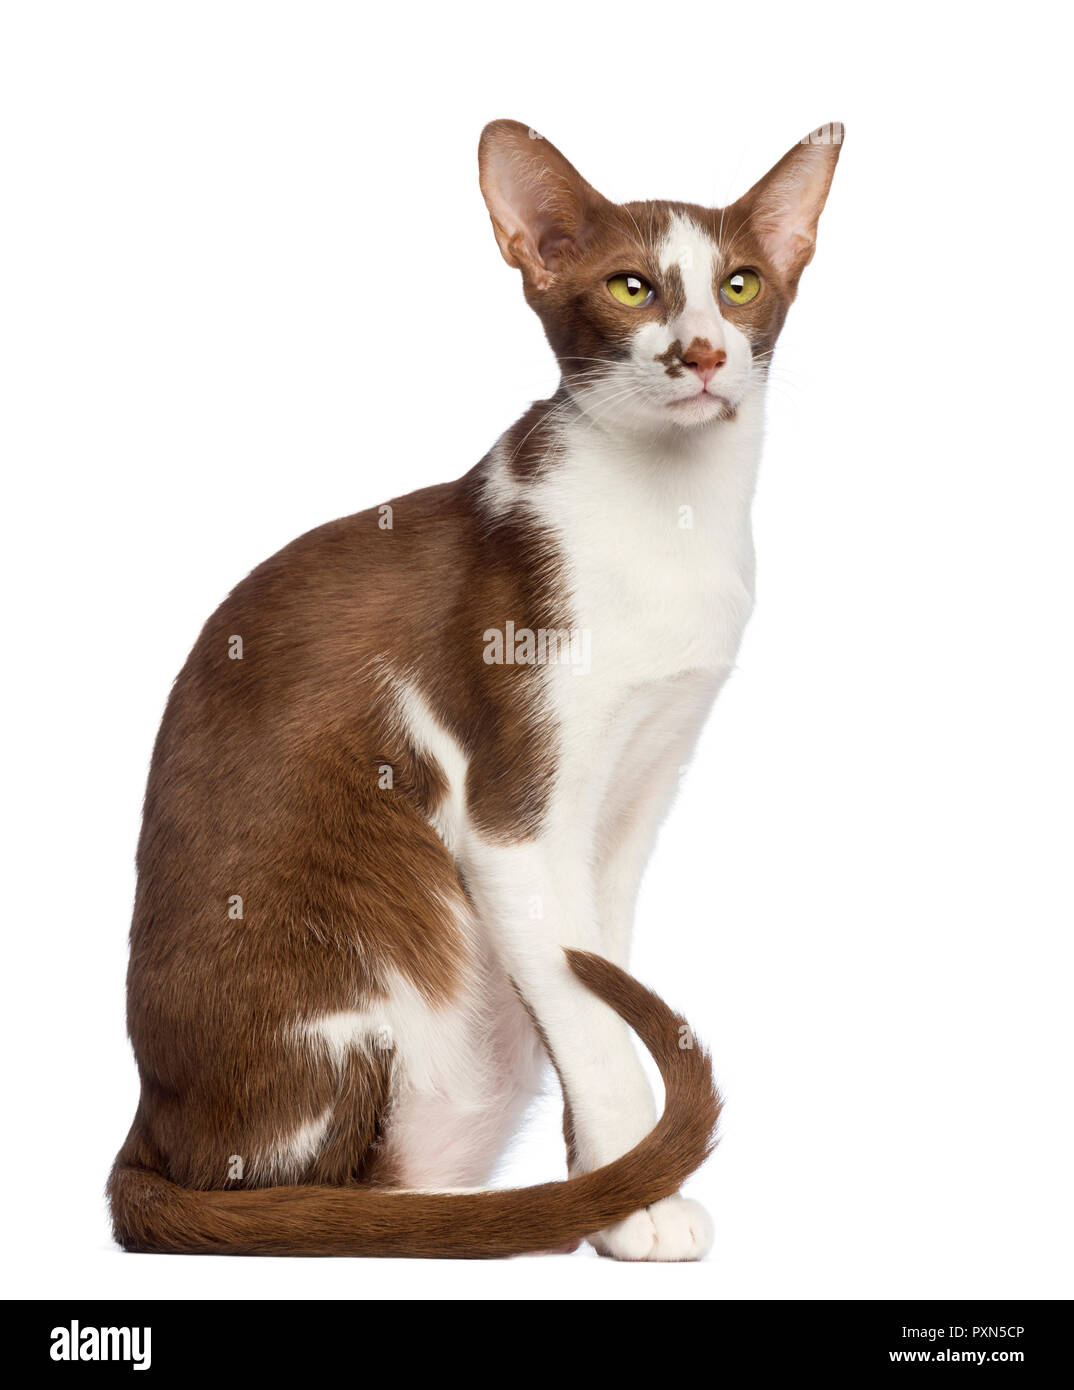 49+ Oriental shorthair louisiana cat pics, cats, cute cats